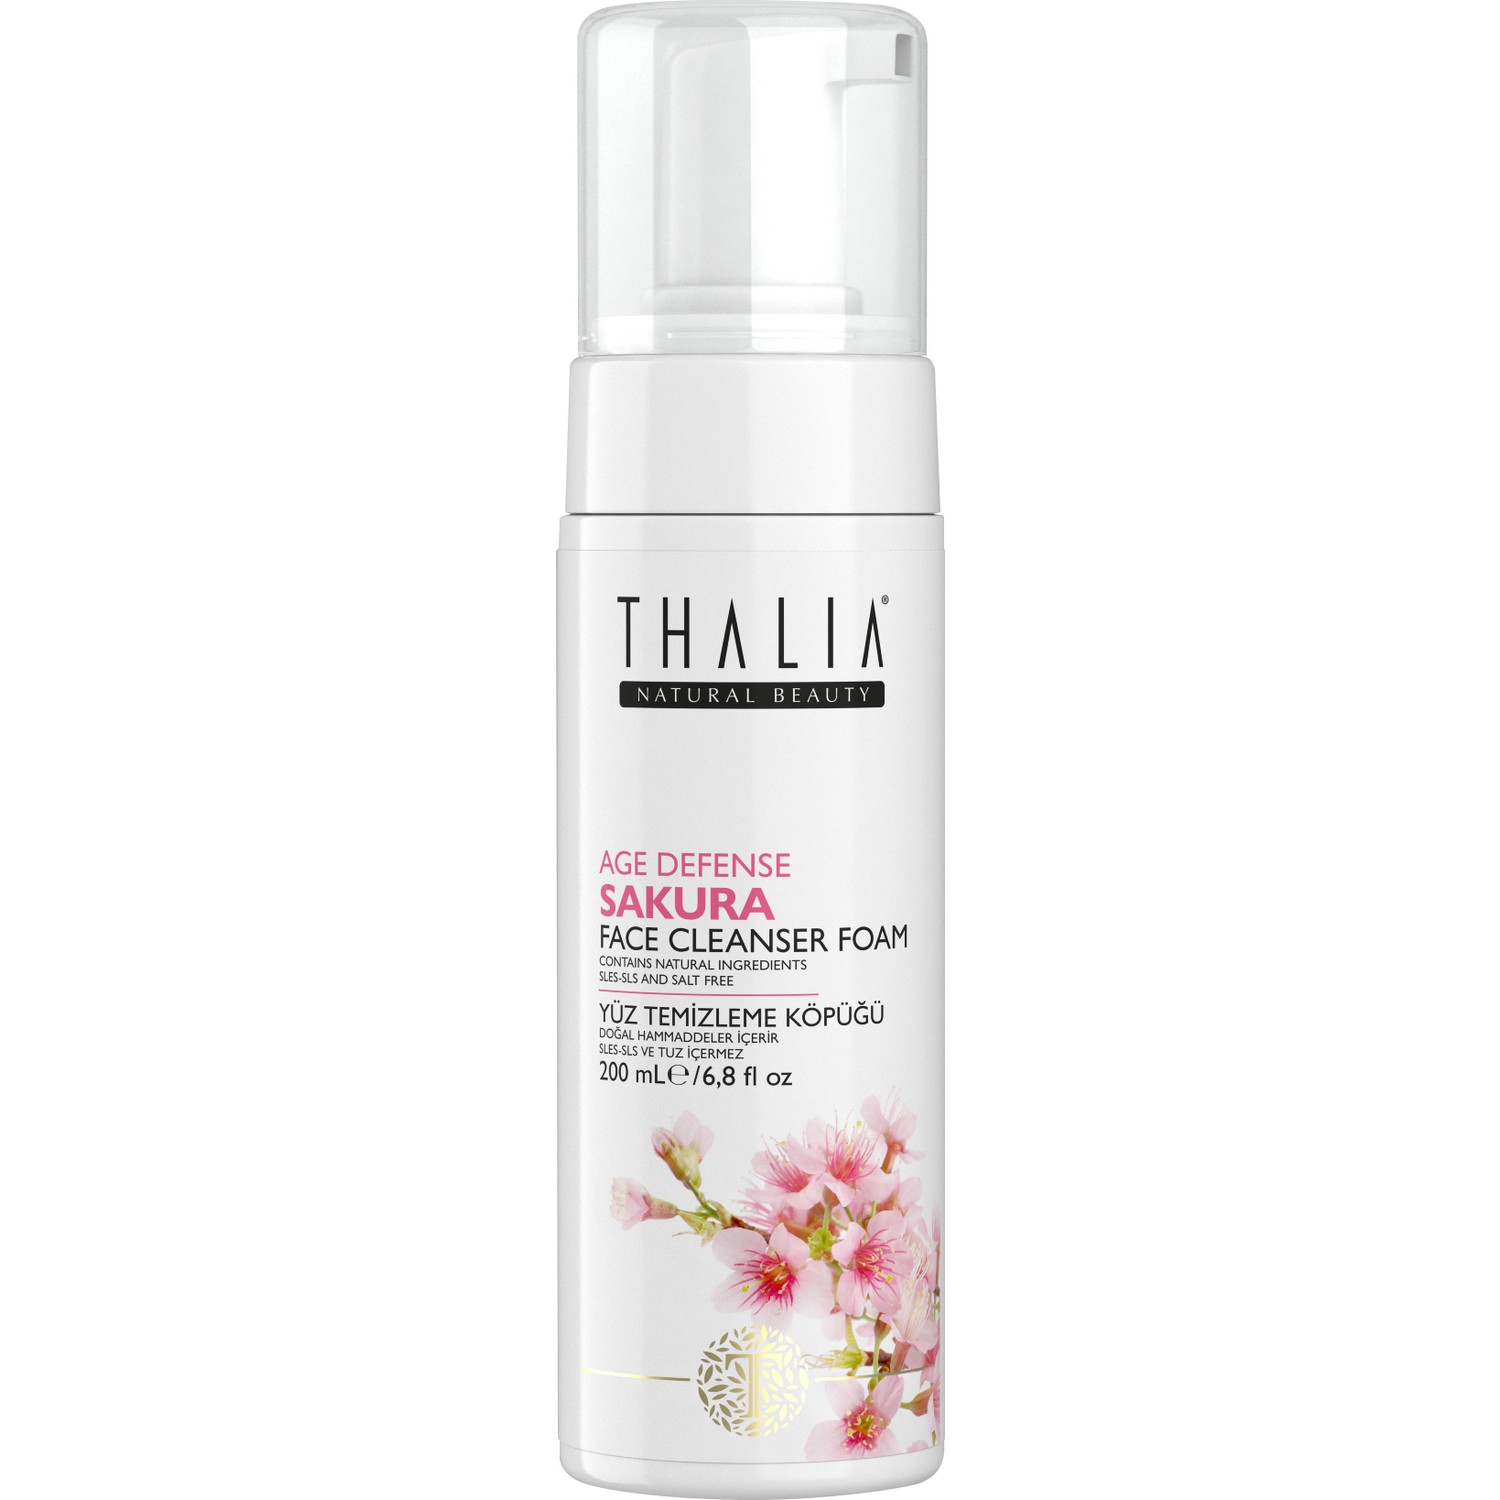 Пенка для умывания Thalia с экстрактом сакуры, 200 мл антивозрастное мыло с ароматом сакуры thalia natural beauty age defense sakura soap